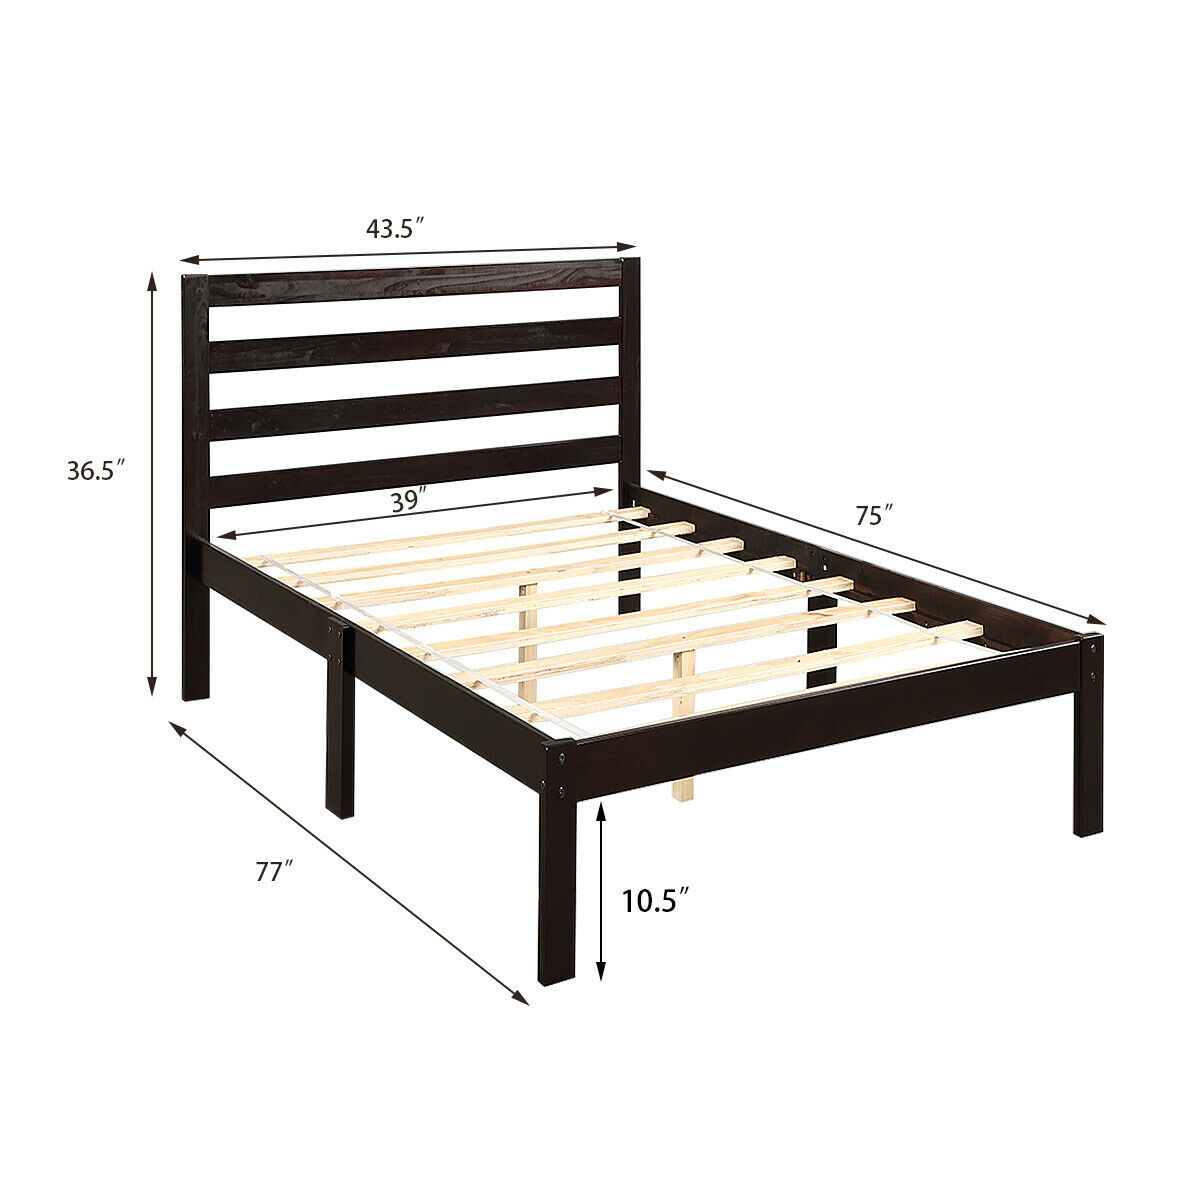 Gymax Solid Wood Platform Bed W, Solid Wood Slat Bed Frame